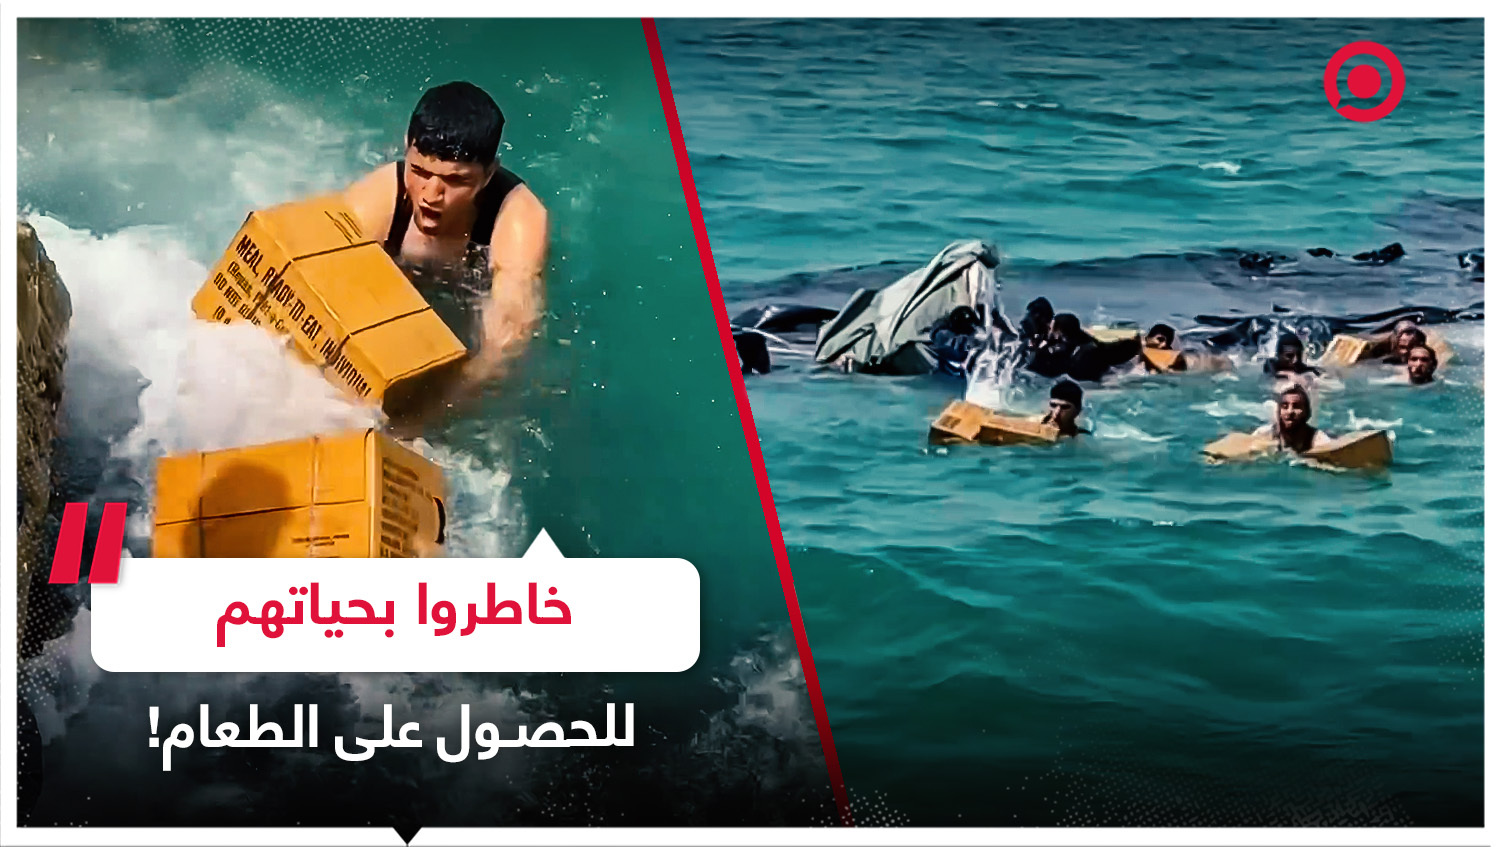 فلسطينيو غزة يخاطرون بحياتهم في مياه البحر للحصول على صناديق المساعدات